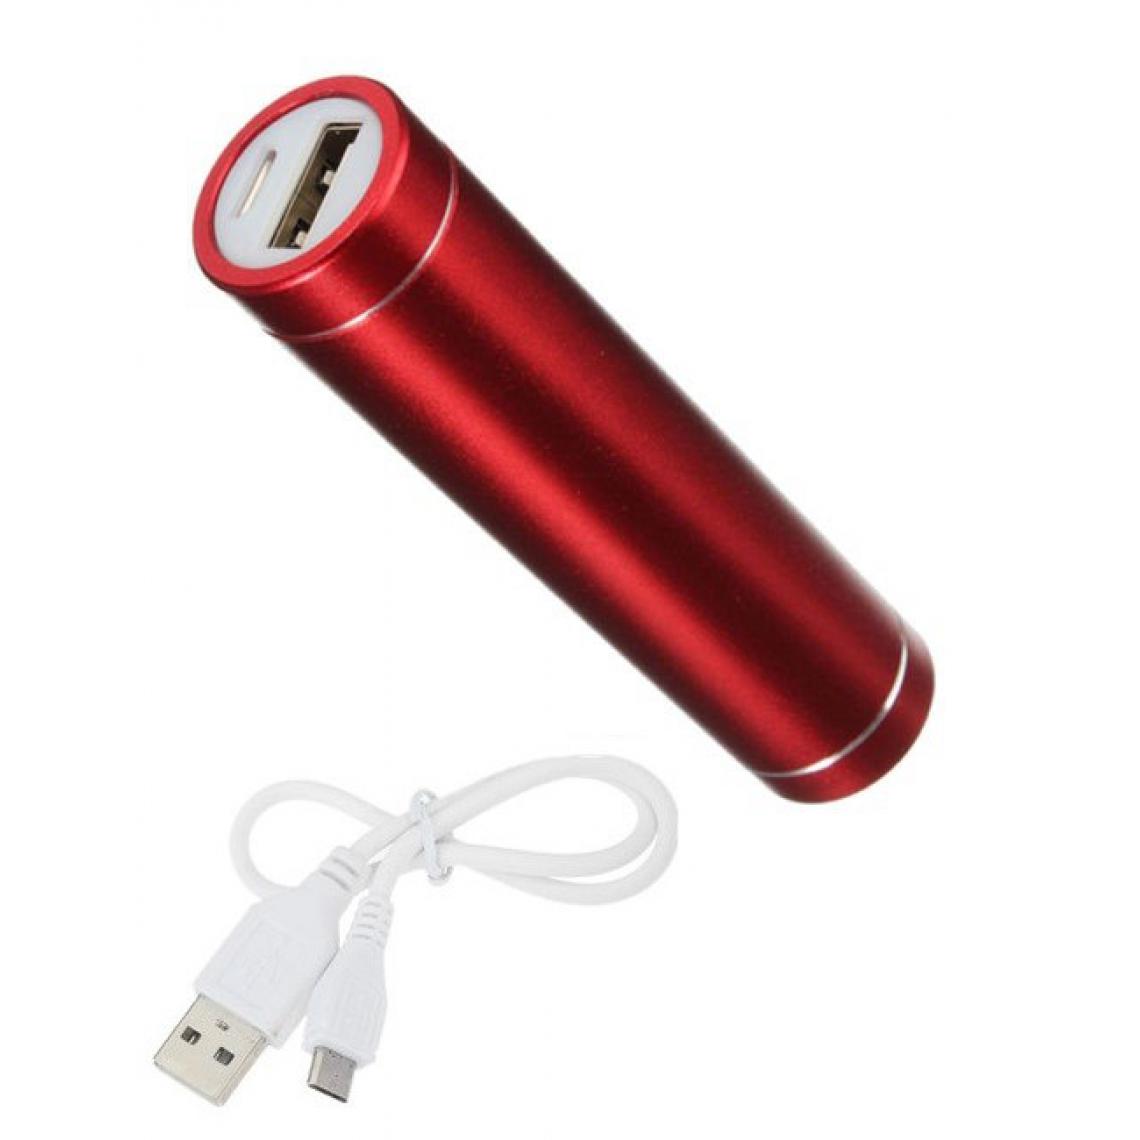 Shot - Batterie Chargeur Externe pour "IPHONE 12 Pro" Power Bank 2600mAh avec Cable USB/Mirco USB Secours Telephone (ROUGE) - Chargeur secteur téléphone